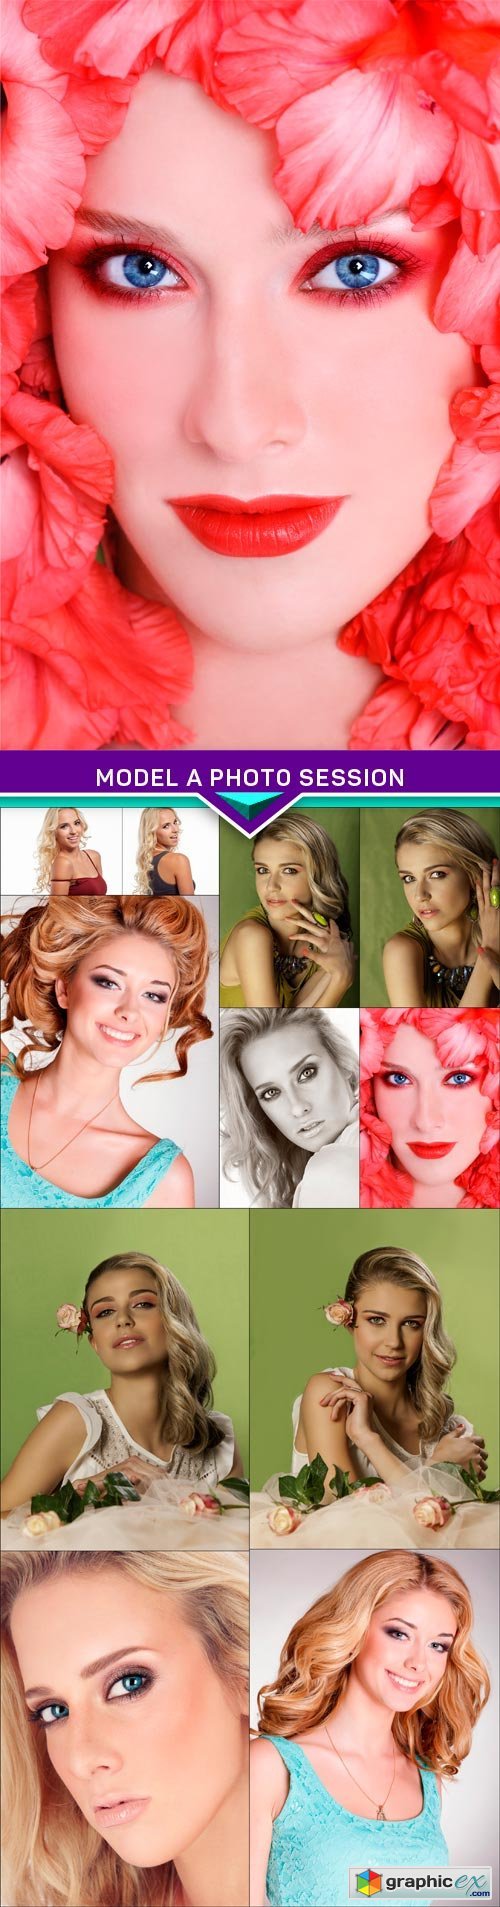 Model a photo session 12x JPEG